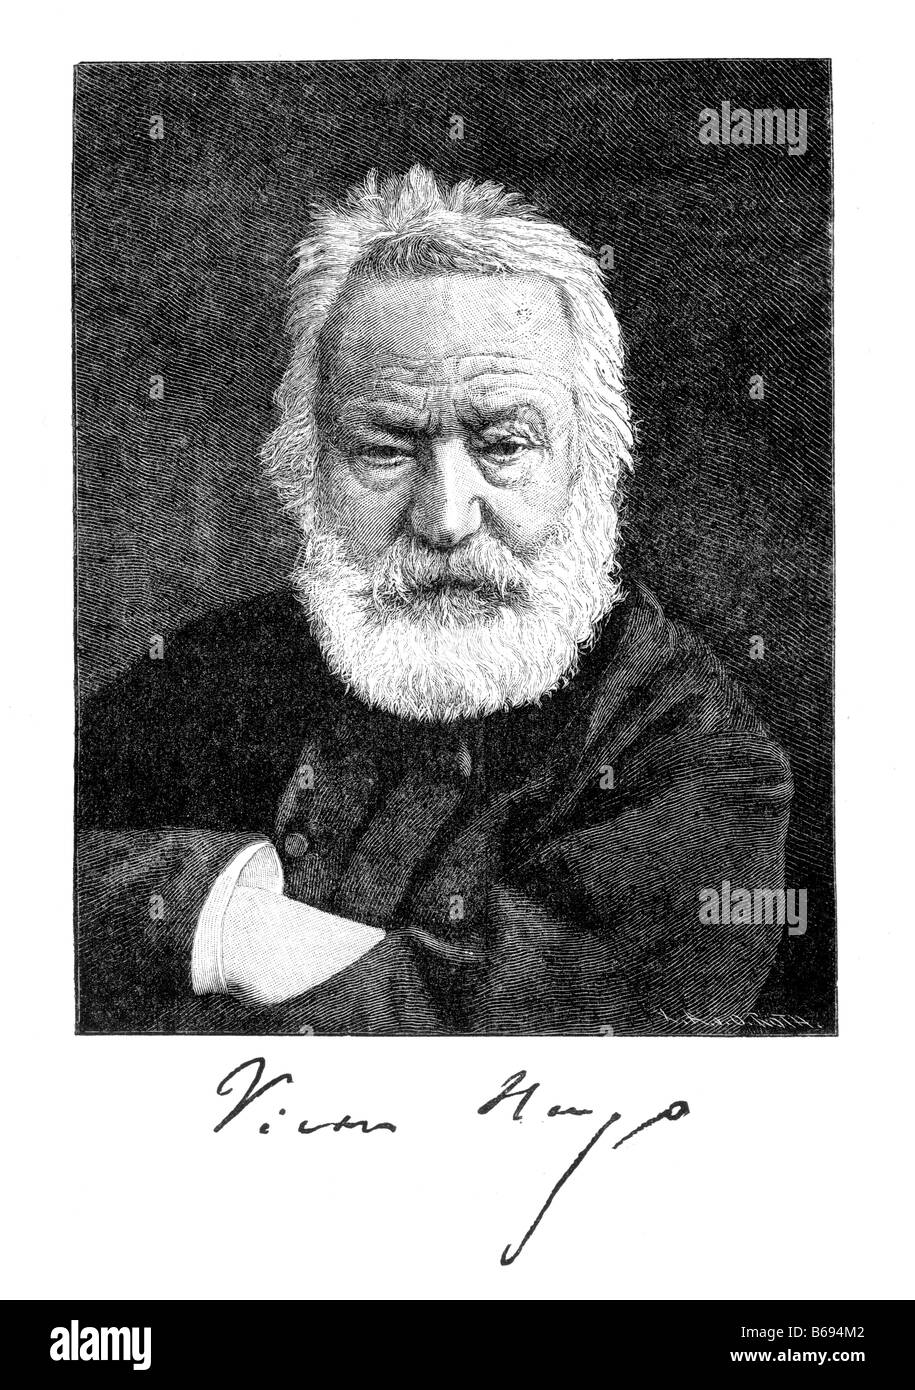 Victor Hugo, französischer Schriftsteller und Dramatiker Porträt des 19. Jahrhunderts Illustration Stockfoto